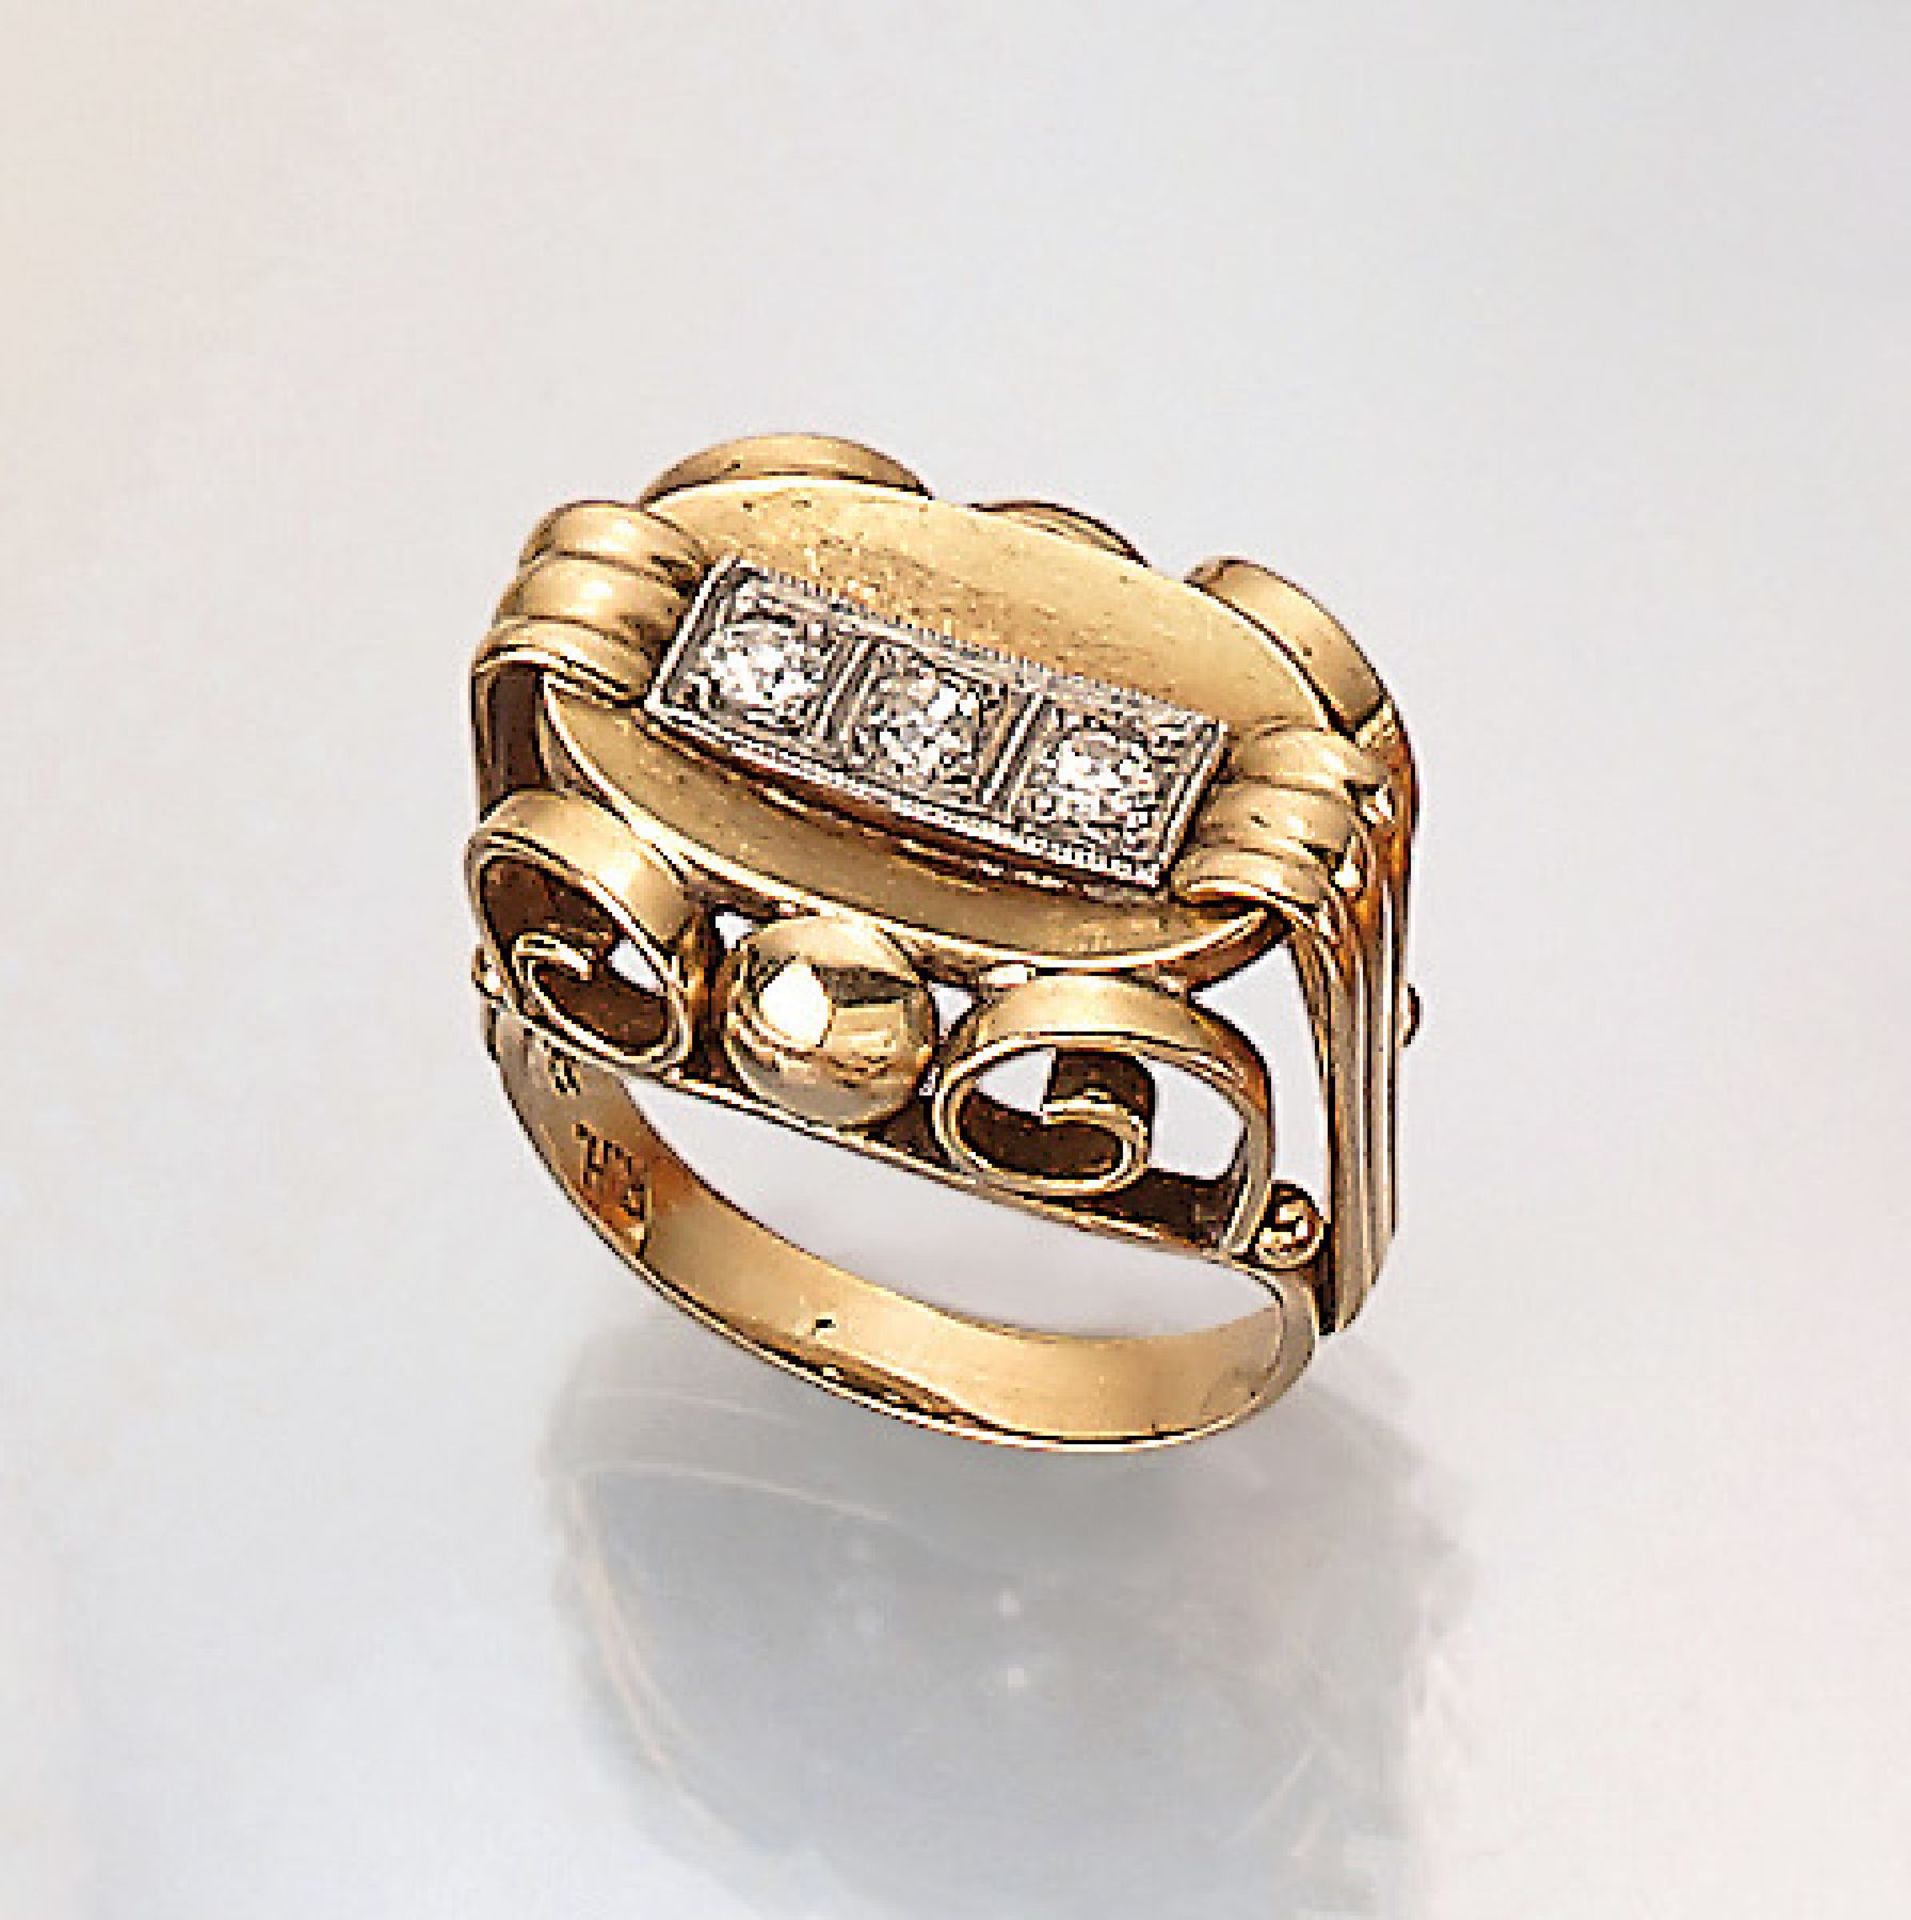 14 kt Gold Ring mit Diamanten, deutsch um 1940, GG/WG 585/000, in WG gefasste Diam. zus. ca. 0.25 ct